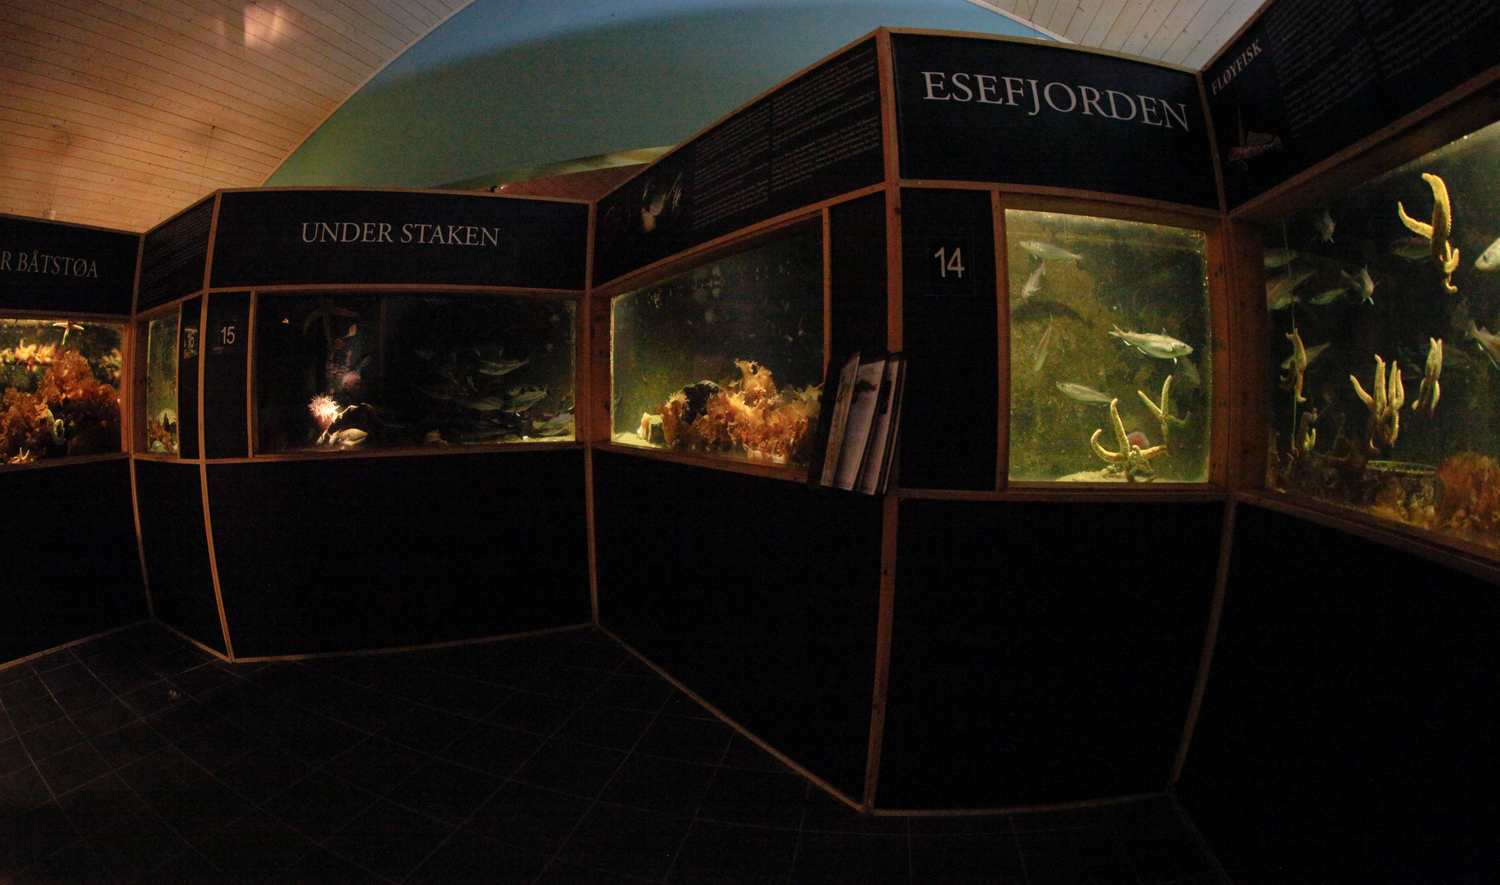 Sognefjord akvarium A38